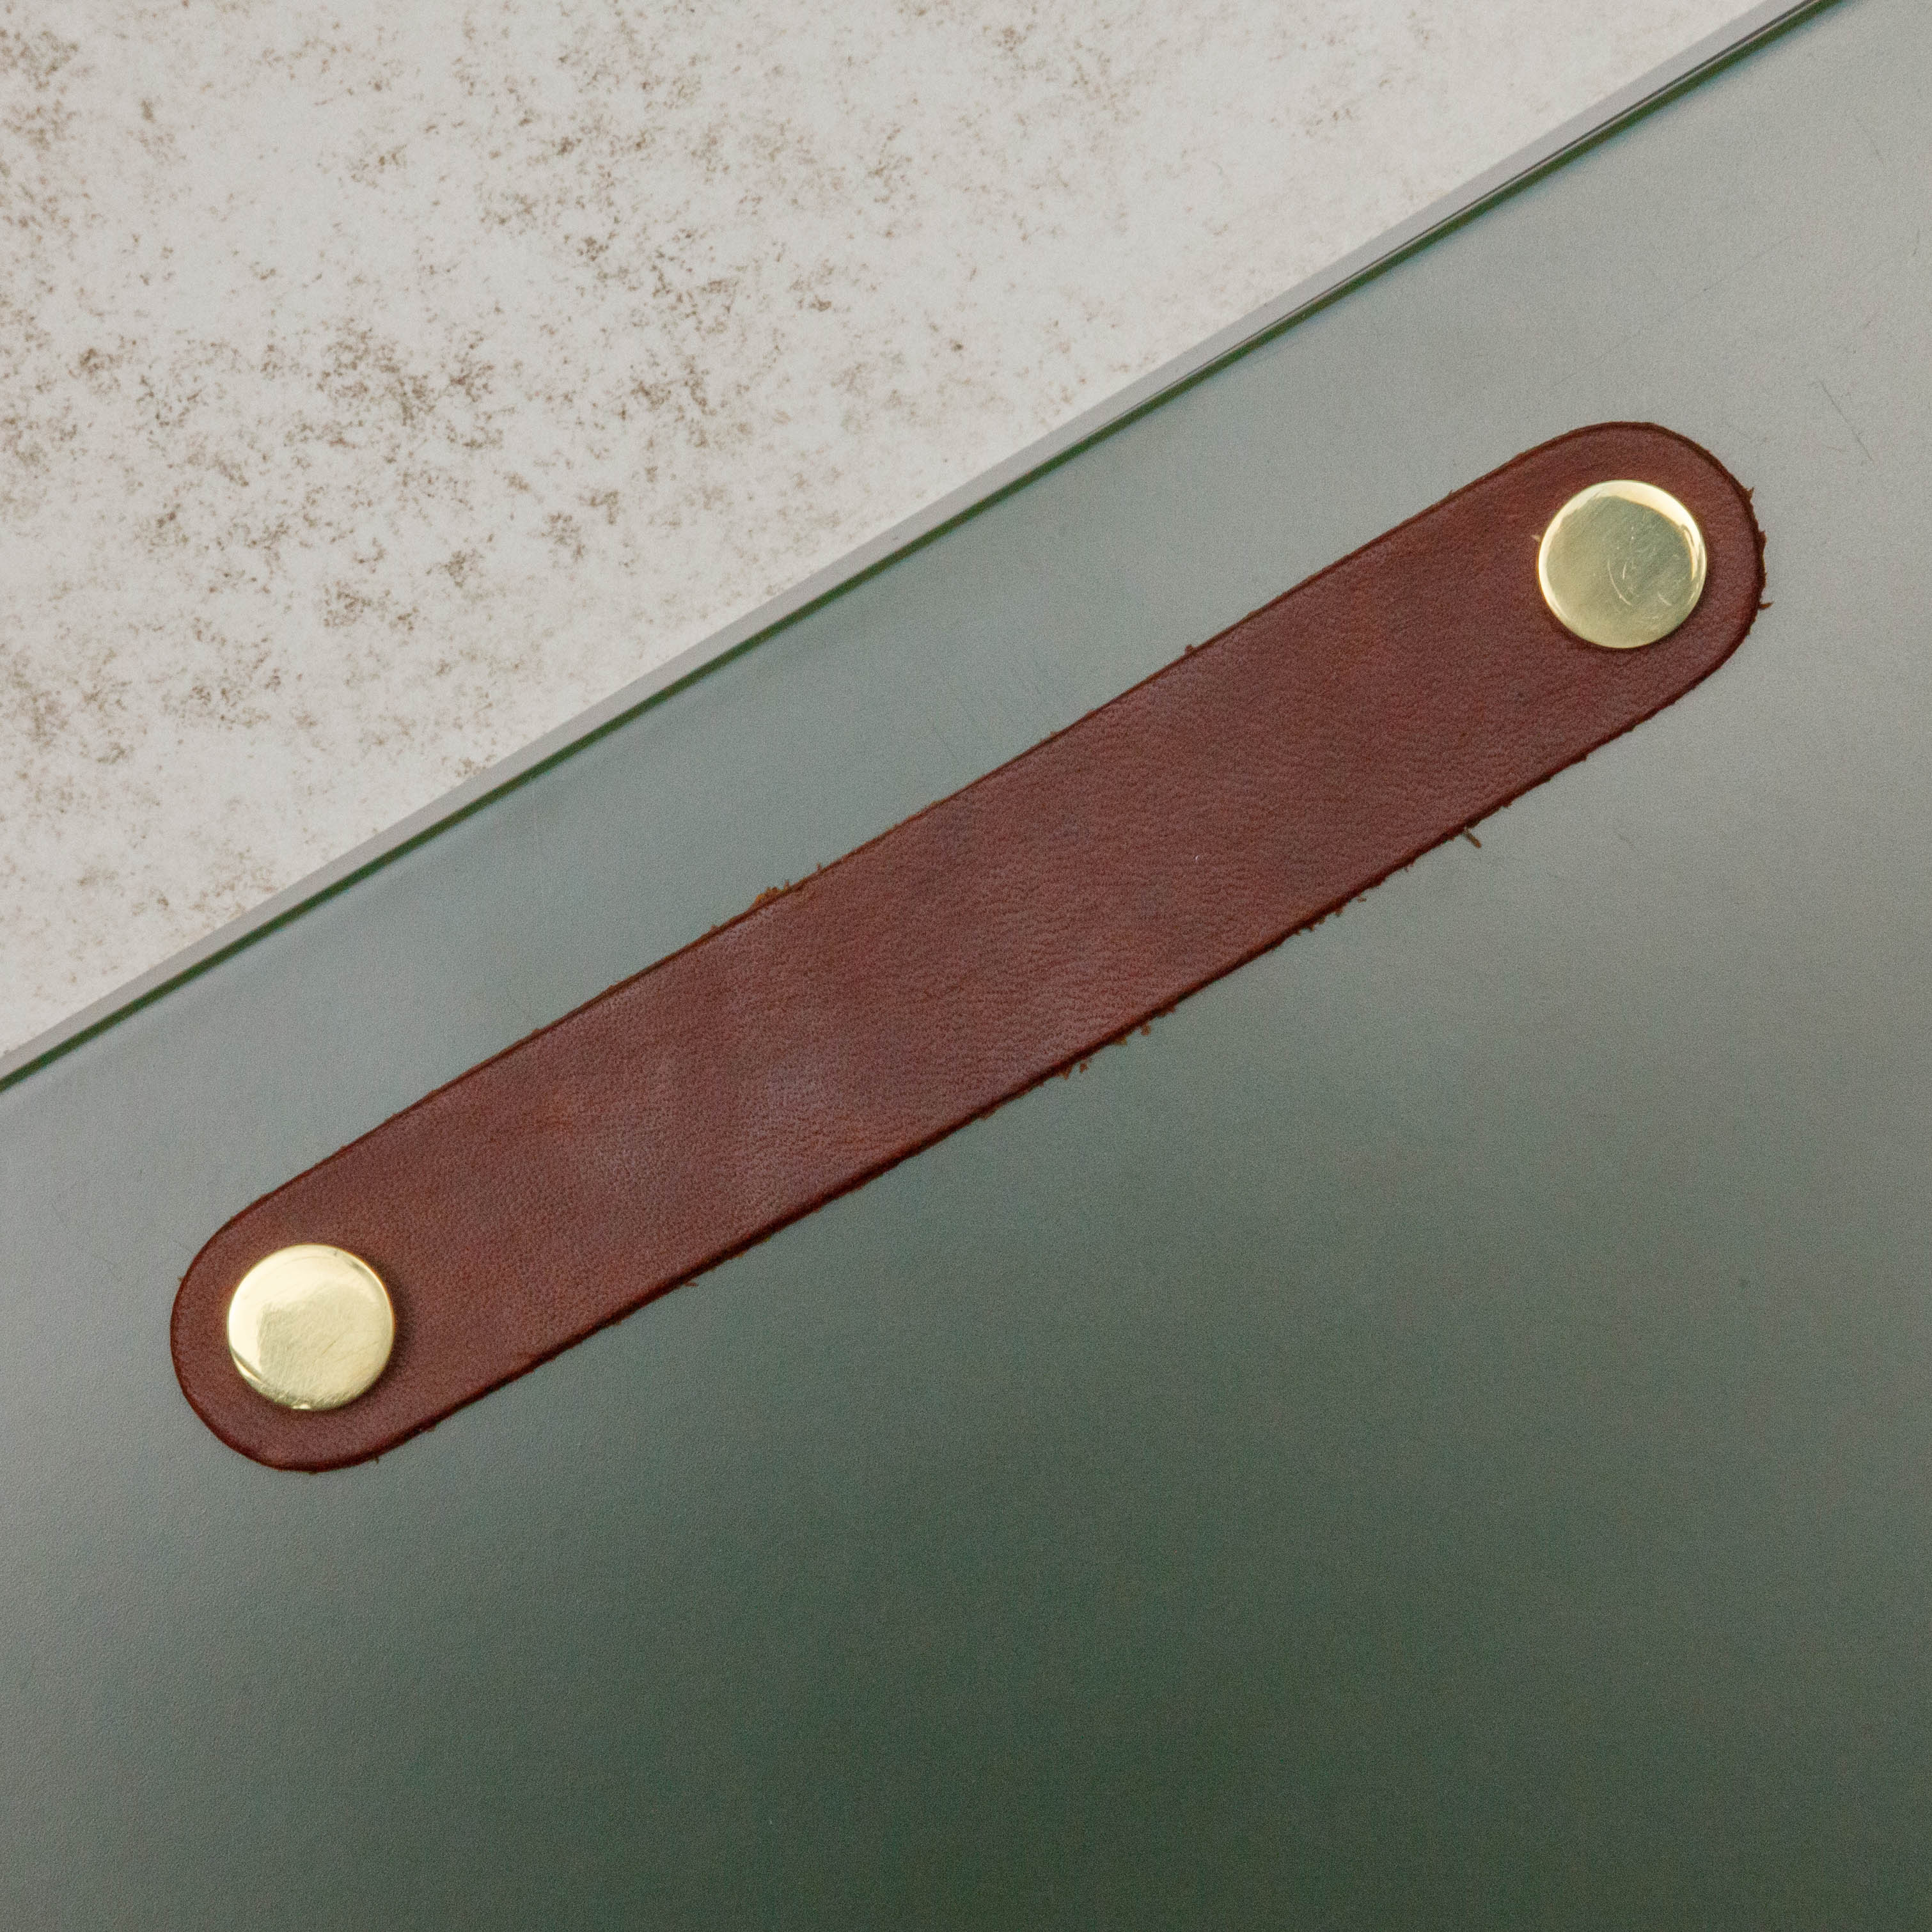 Poignée Poignée Loop Arrondie, couleur marron/laiton, ref 333271-11, dimensions 160 x 25 mm